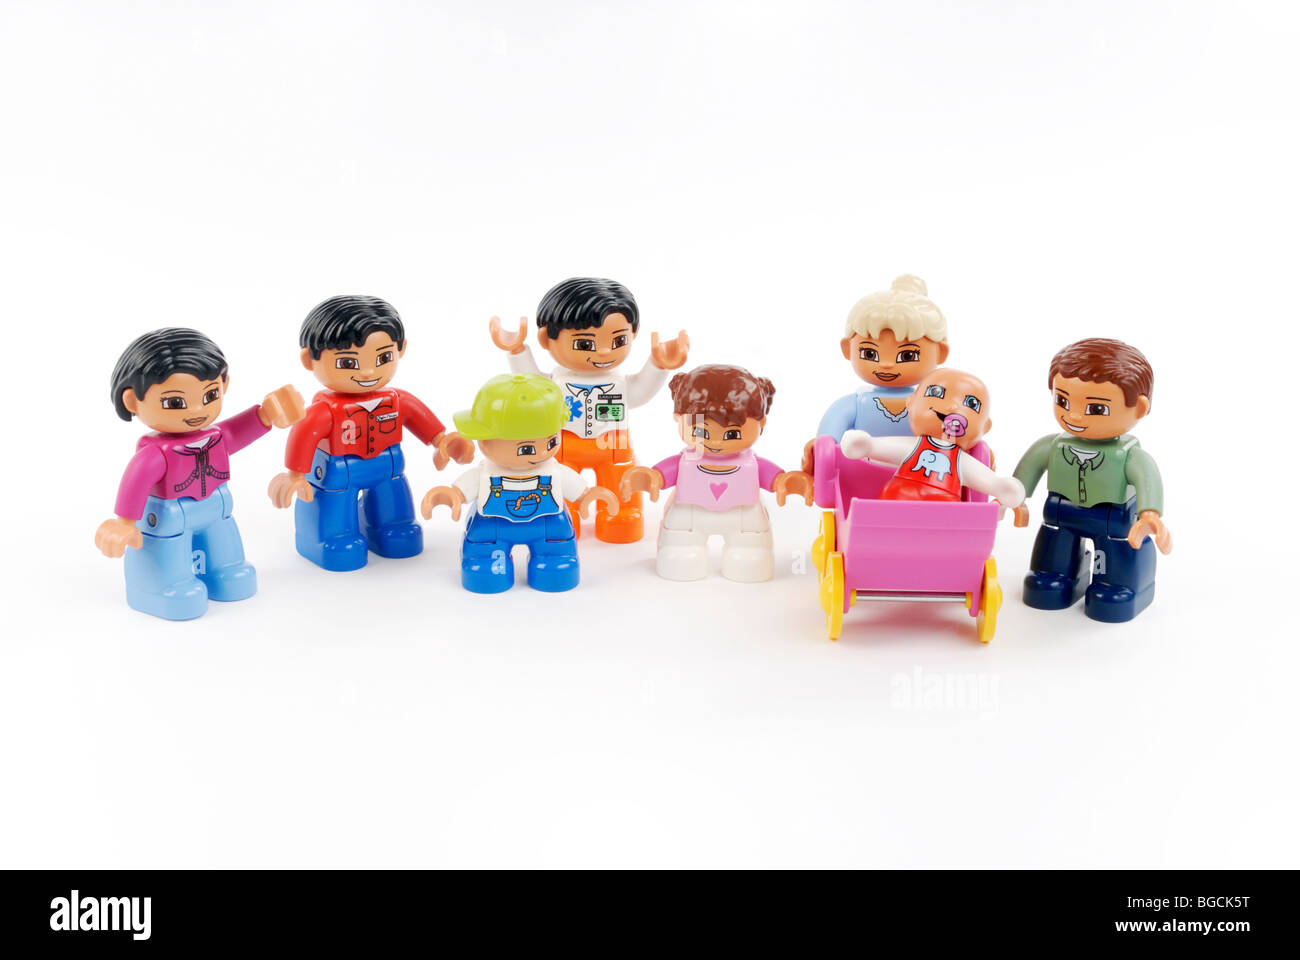 Lego Duplo figures Stock Photo - Alamy